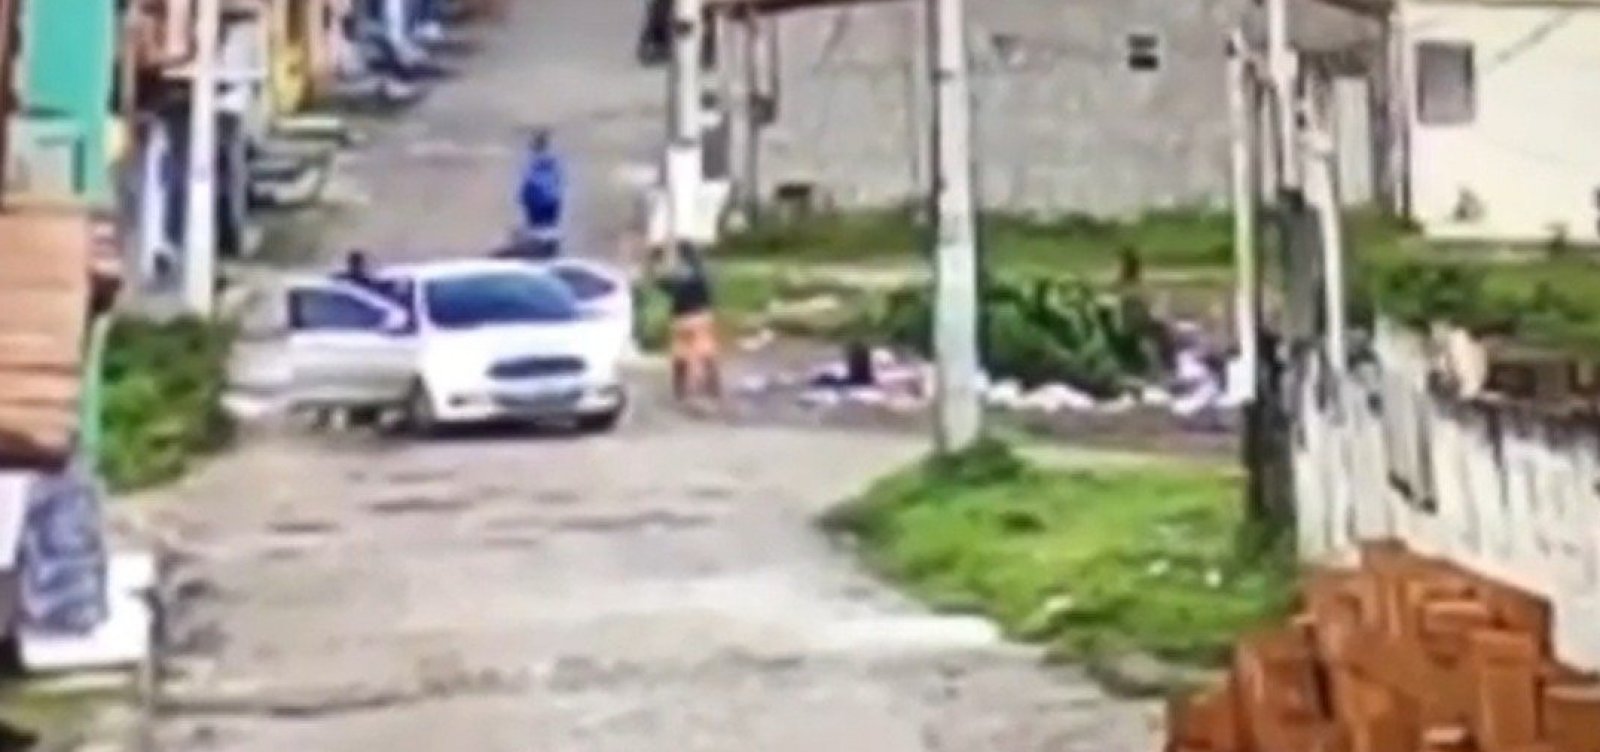 Vídeo contraria versão da PM e mostra jovem rendido sendo morto a tiros por policial na Bahia